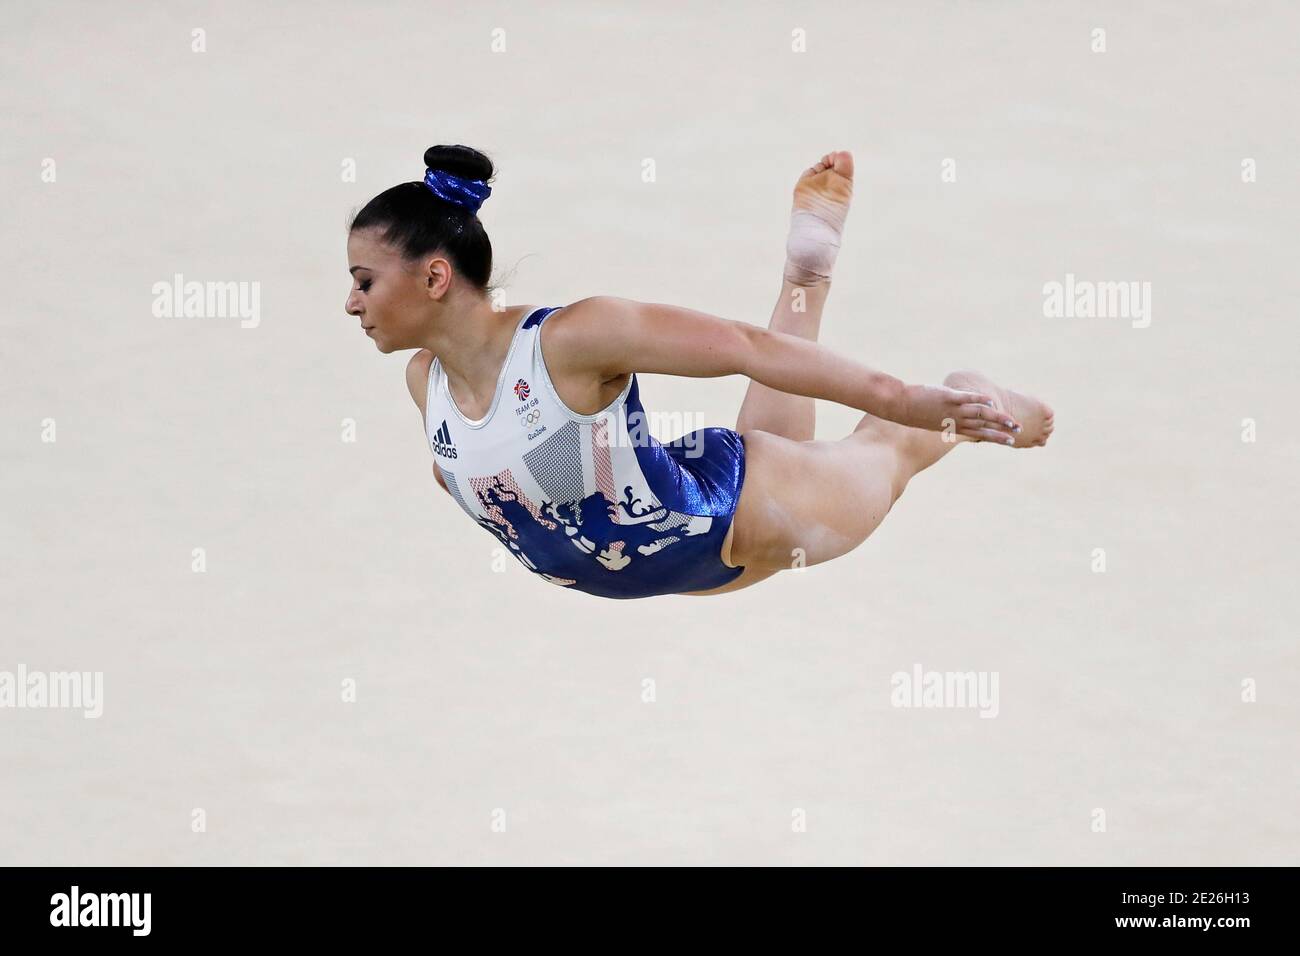 Claudia Fragapane à la gymnastique artistique des Jeux Olympiques d'été de Rio 2016. L'athlète de l'équipe de Grande-Bretagne effectue des exercices sur la surface de l'entraînement Banque D'Images